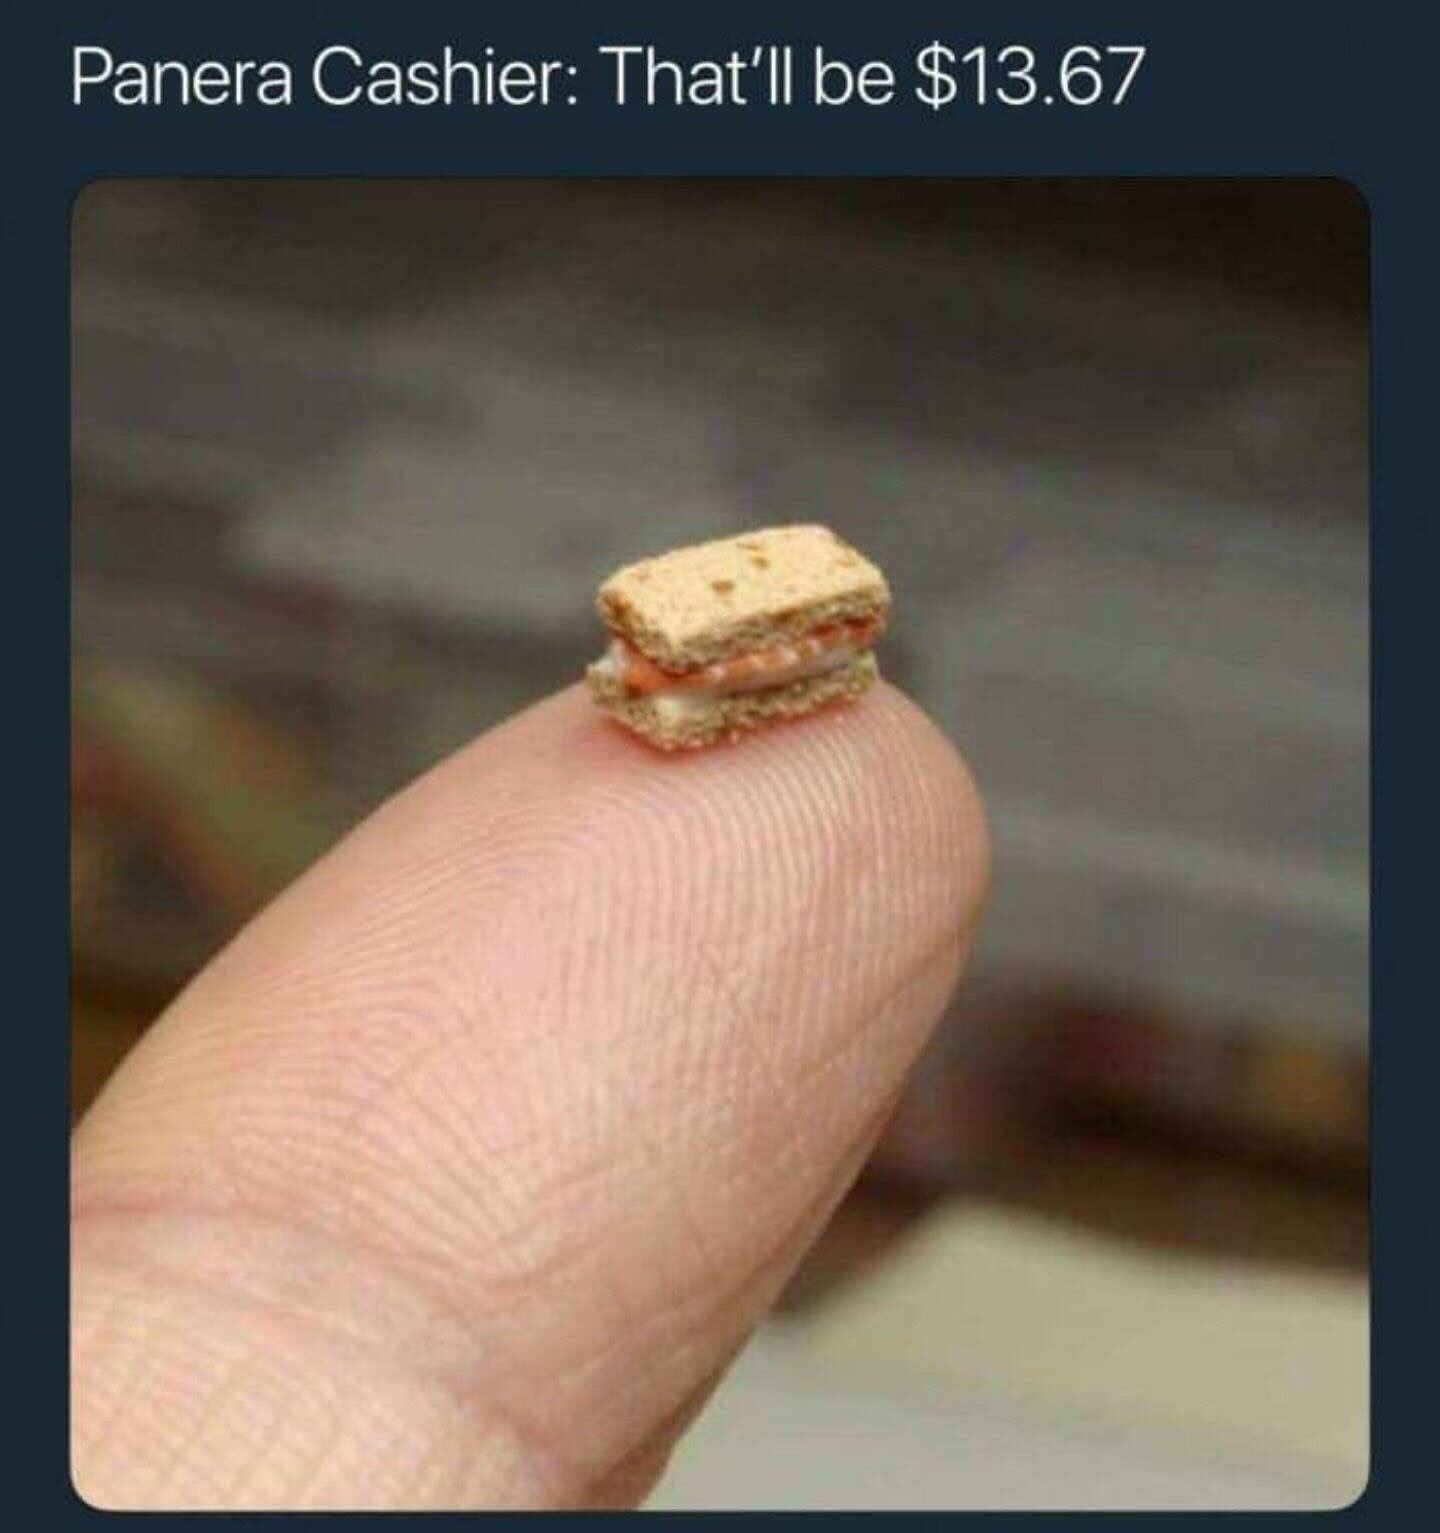 memes - funny panera memes - Panera Cashier That'll be $13.67